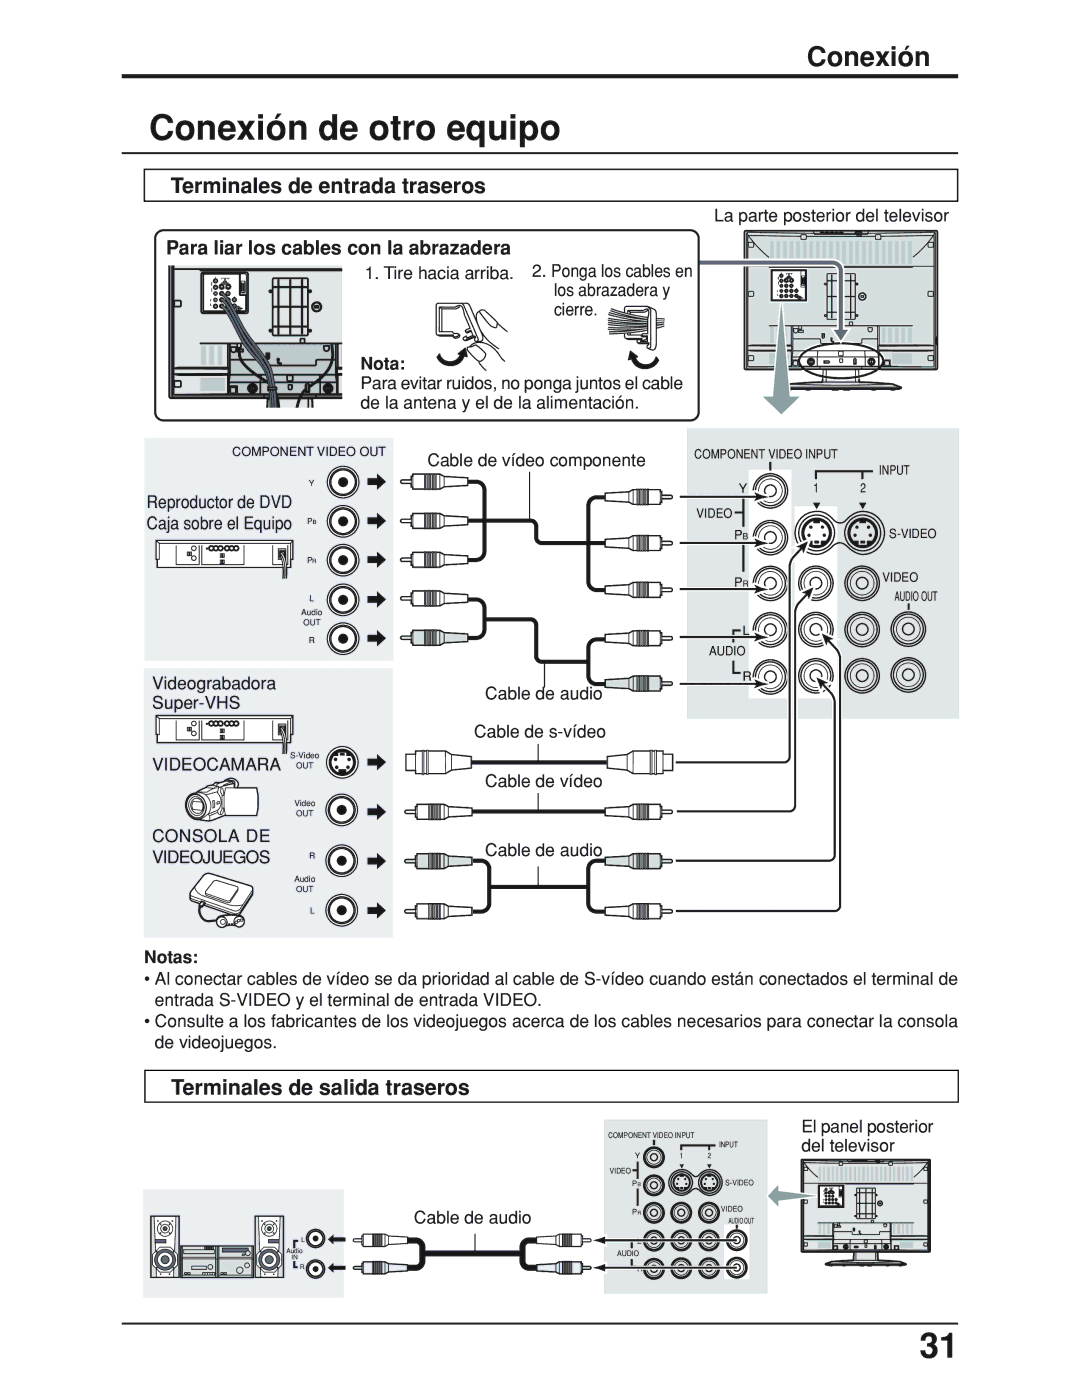 Panasonic TC 19LX50 manual Conexión de otro equipo, Terminales de entrada traseros, Terminales de salida traseros, Notas 